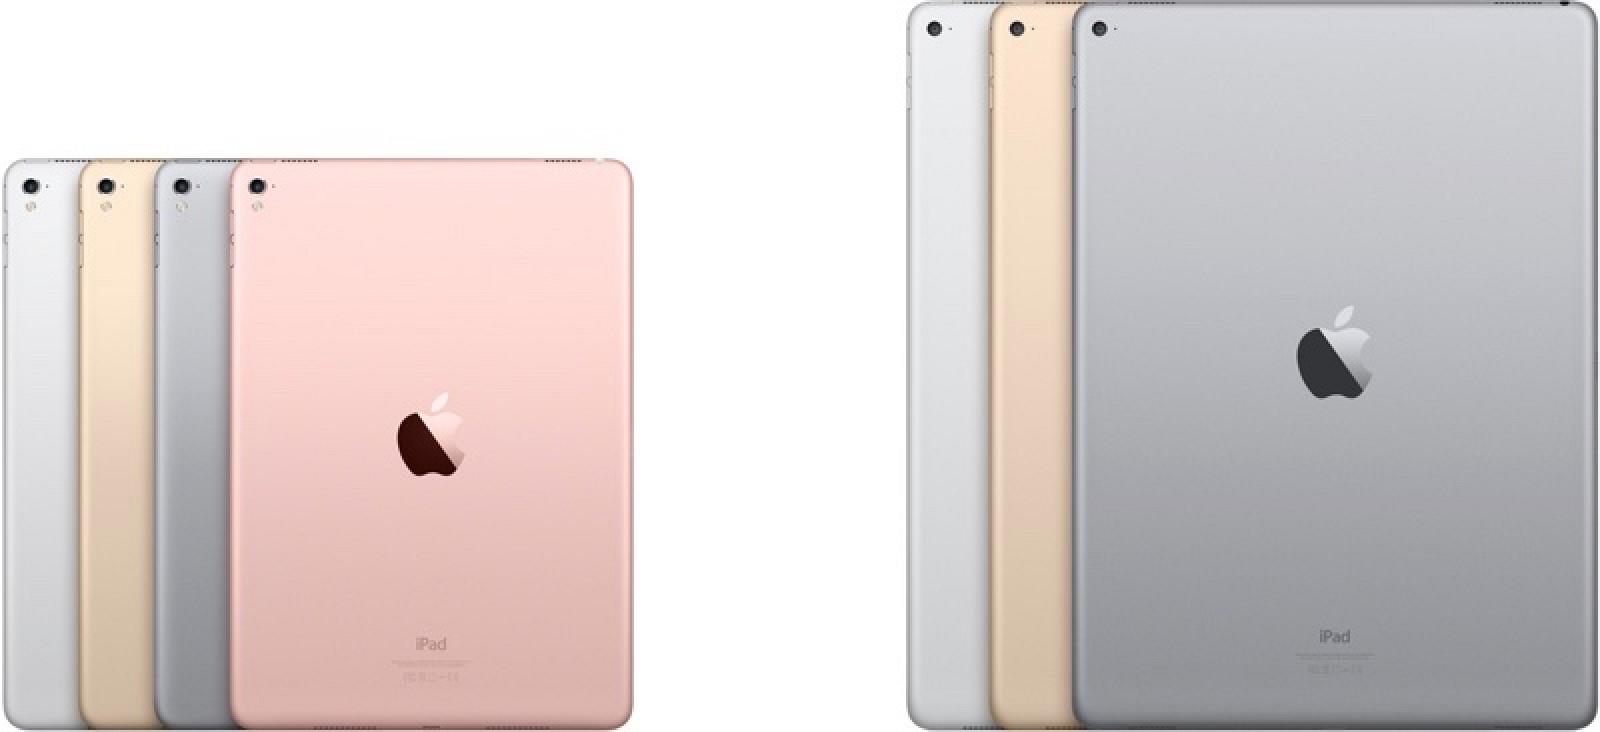 2 Mẫu iPad phổ biến hiện nay với nhiều màu sắc